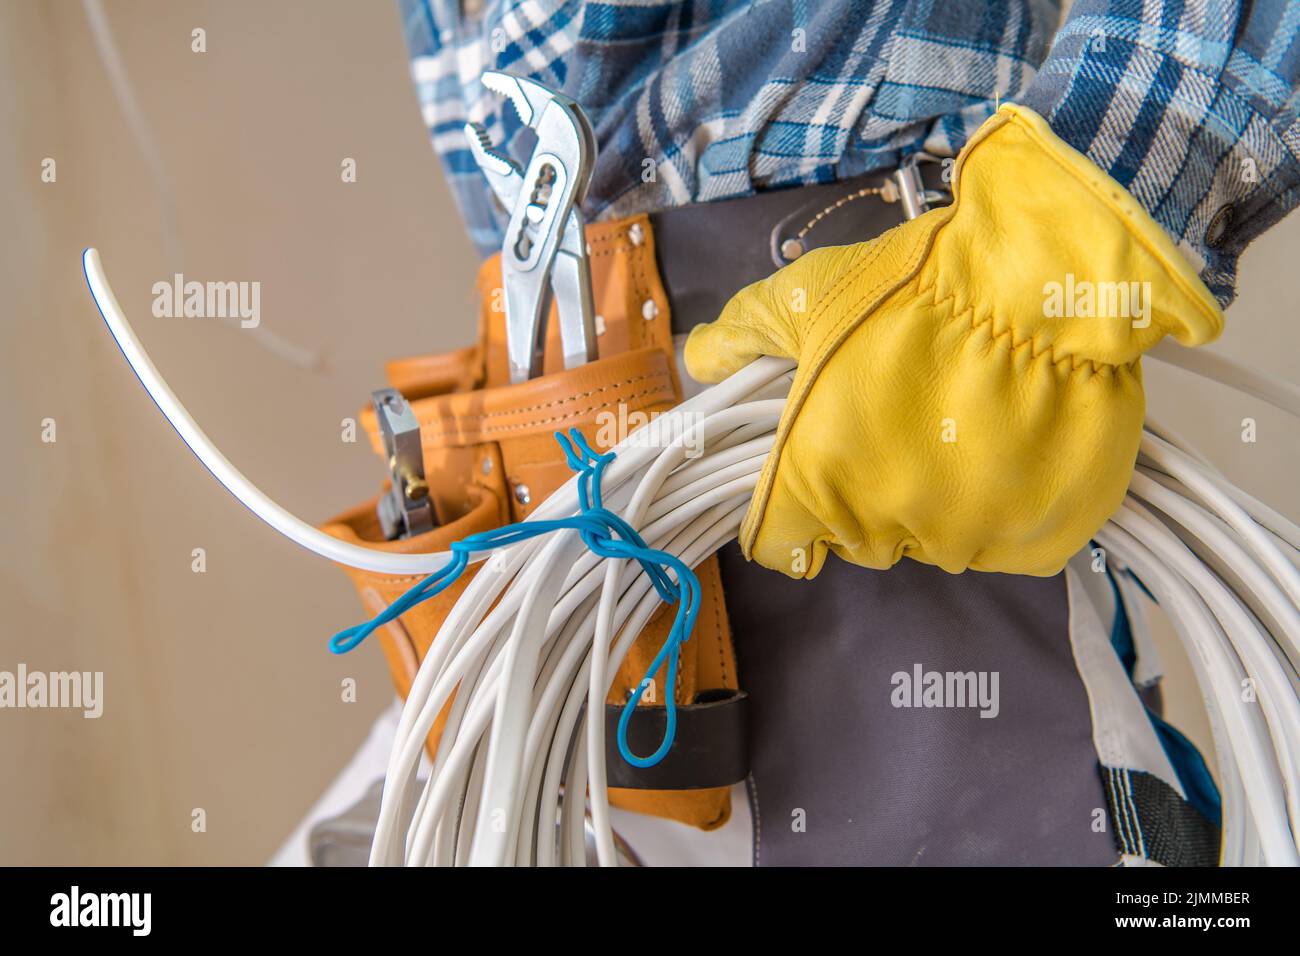 Primo piano dei cavi elettrici bianchi tenuti nella mano sinistra di un elettricista che indossa guanti protettivi gialli per costruzioni. Tema industriale. Foto Stock